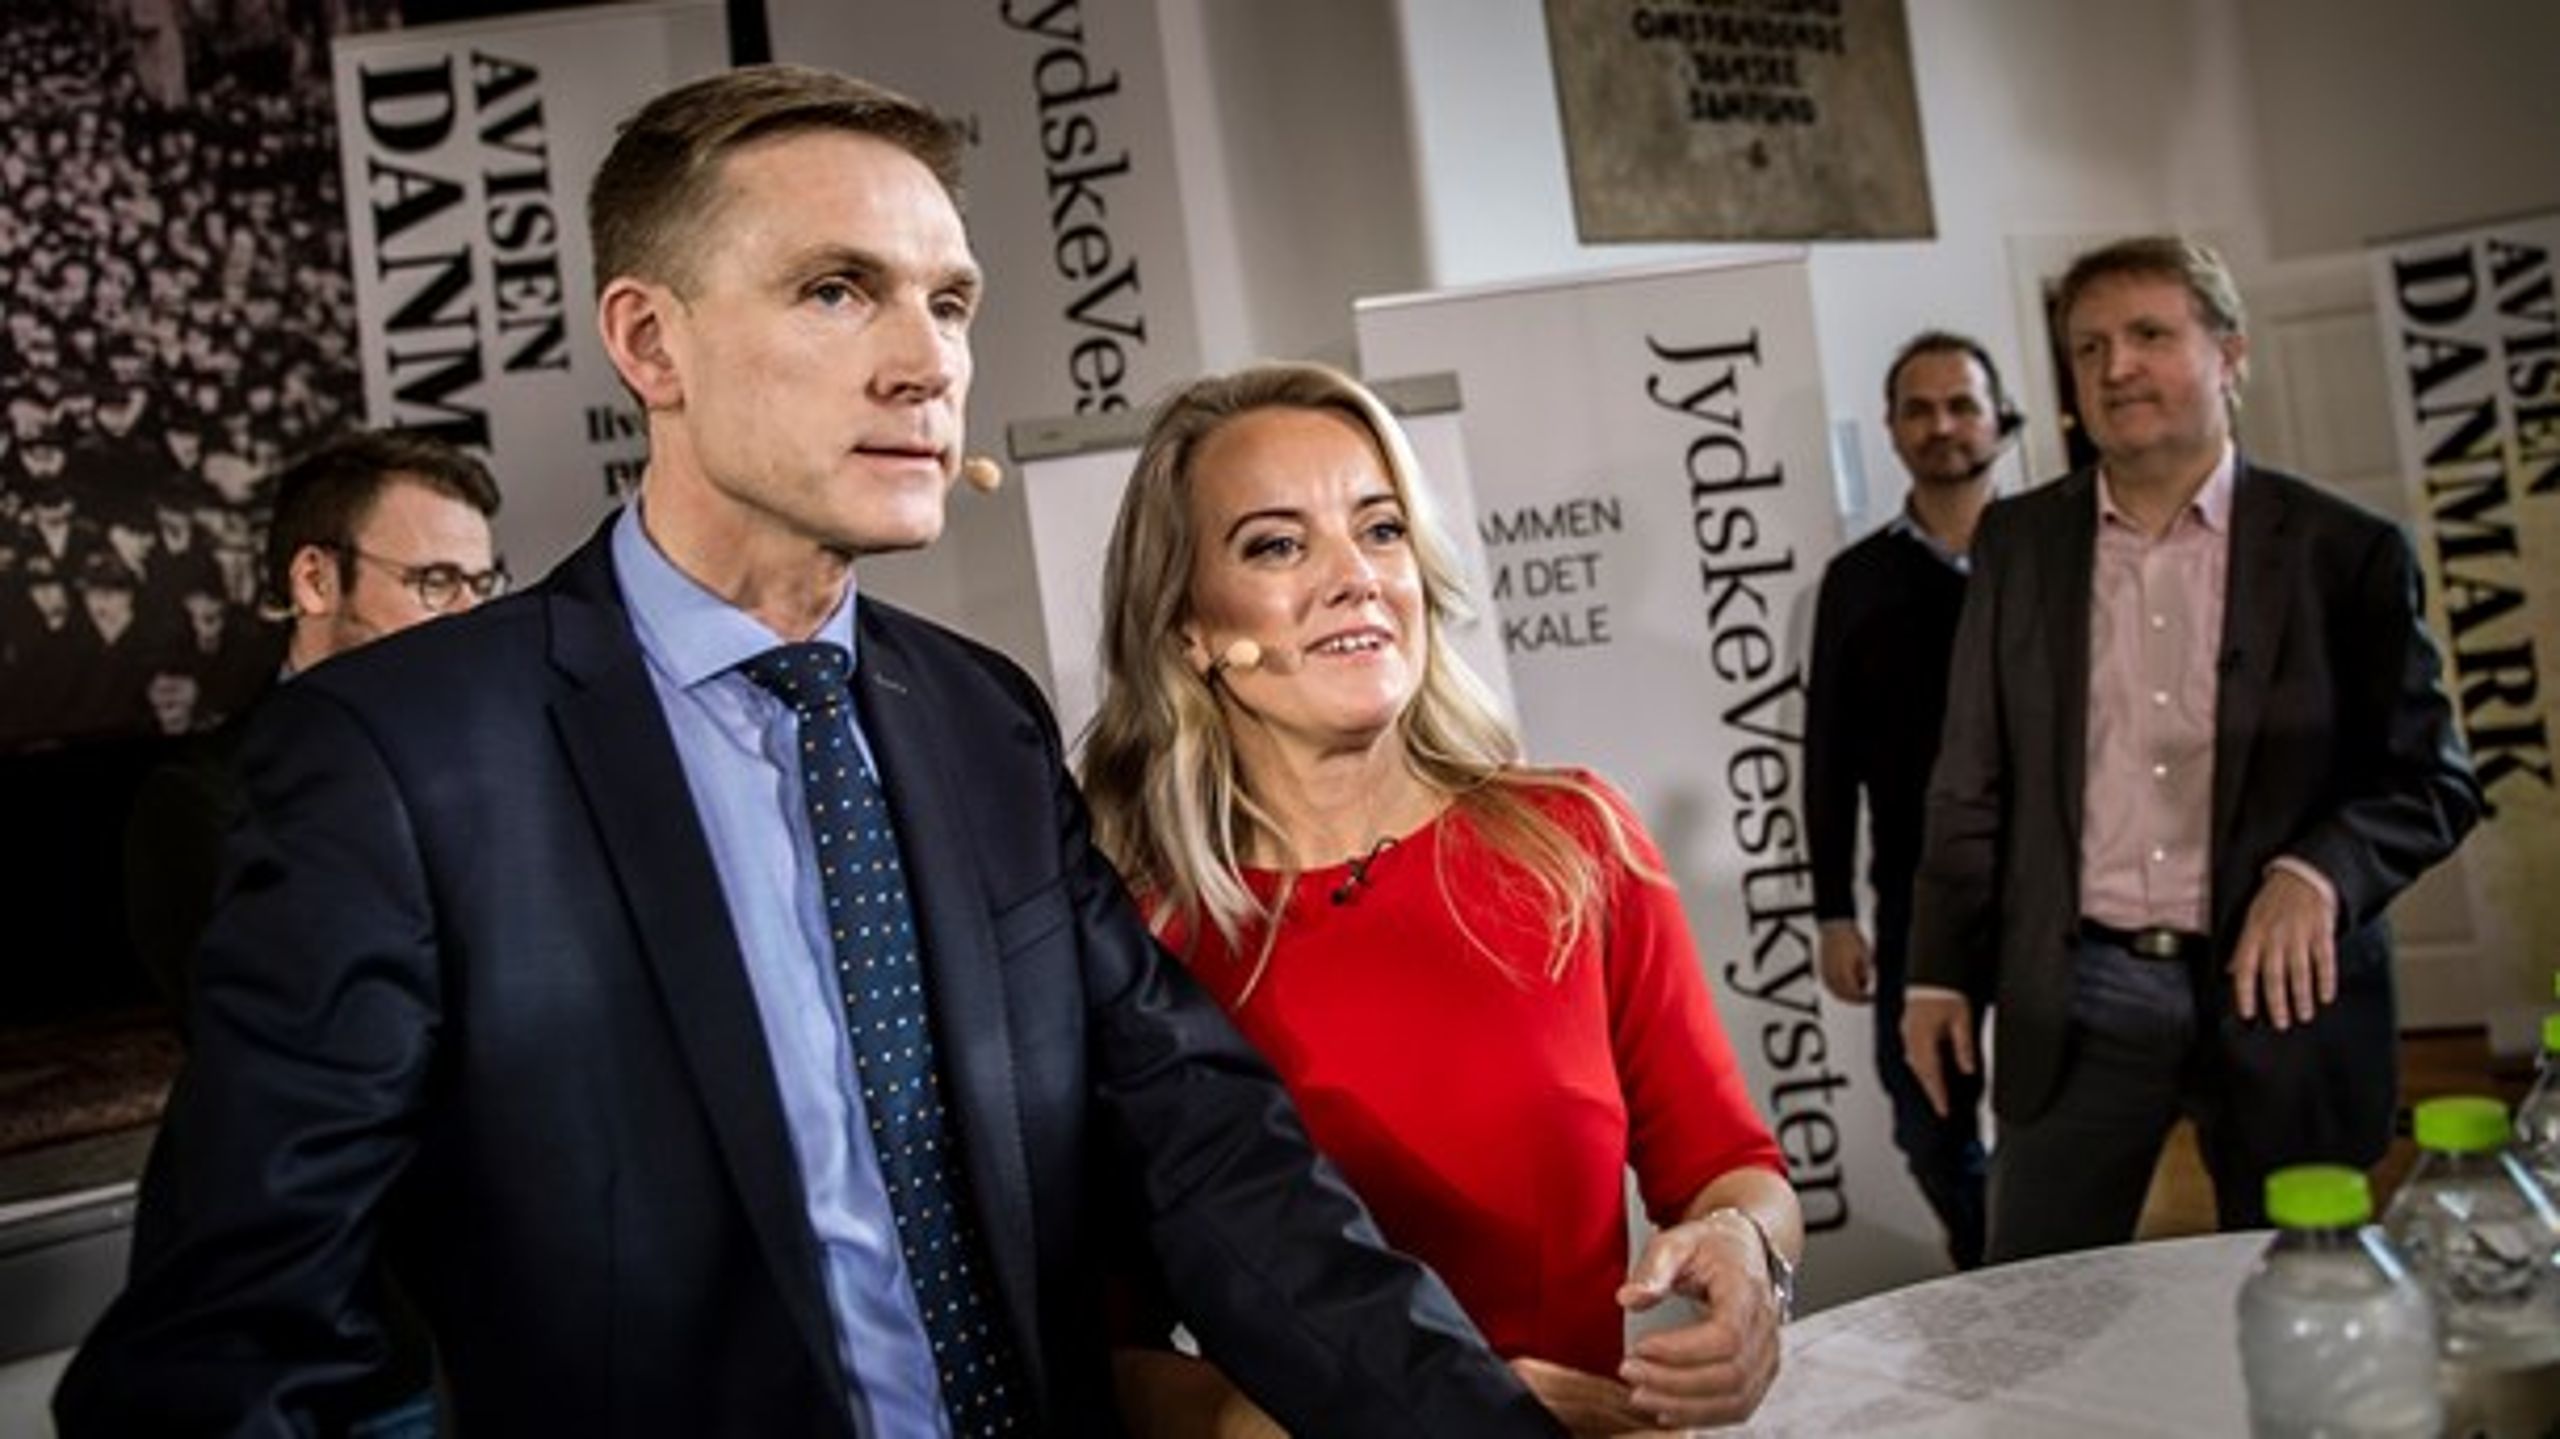 Nye Borgerlige regner med, at den nationalkonservative linje og forsvaret for en kristeligt funderet værdipolitik vil skræmme vælgere væk fra Dansk Folkeparti, skriver Christian Egander Skov.